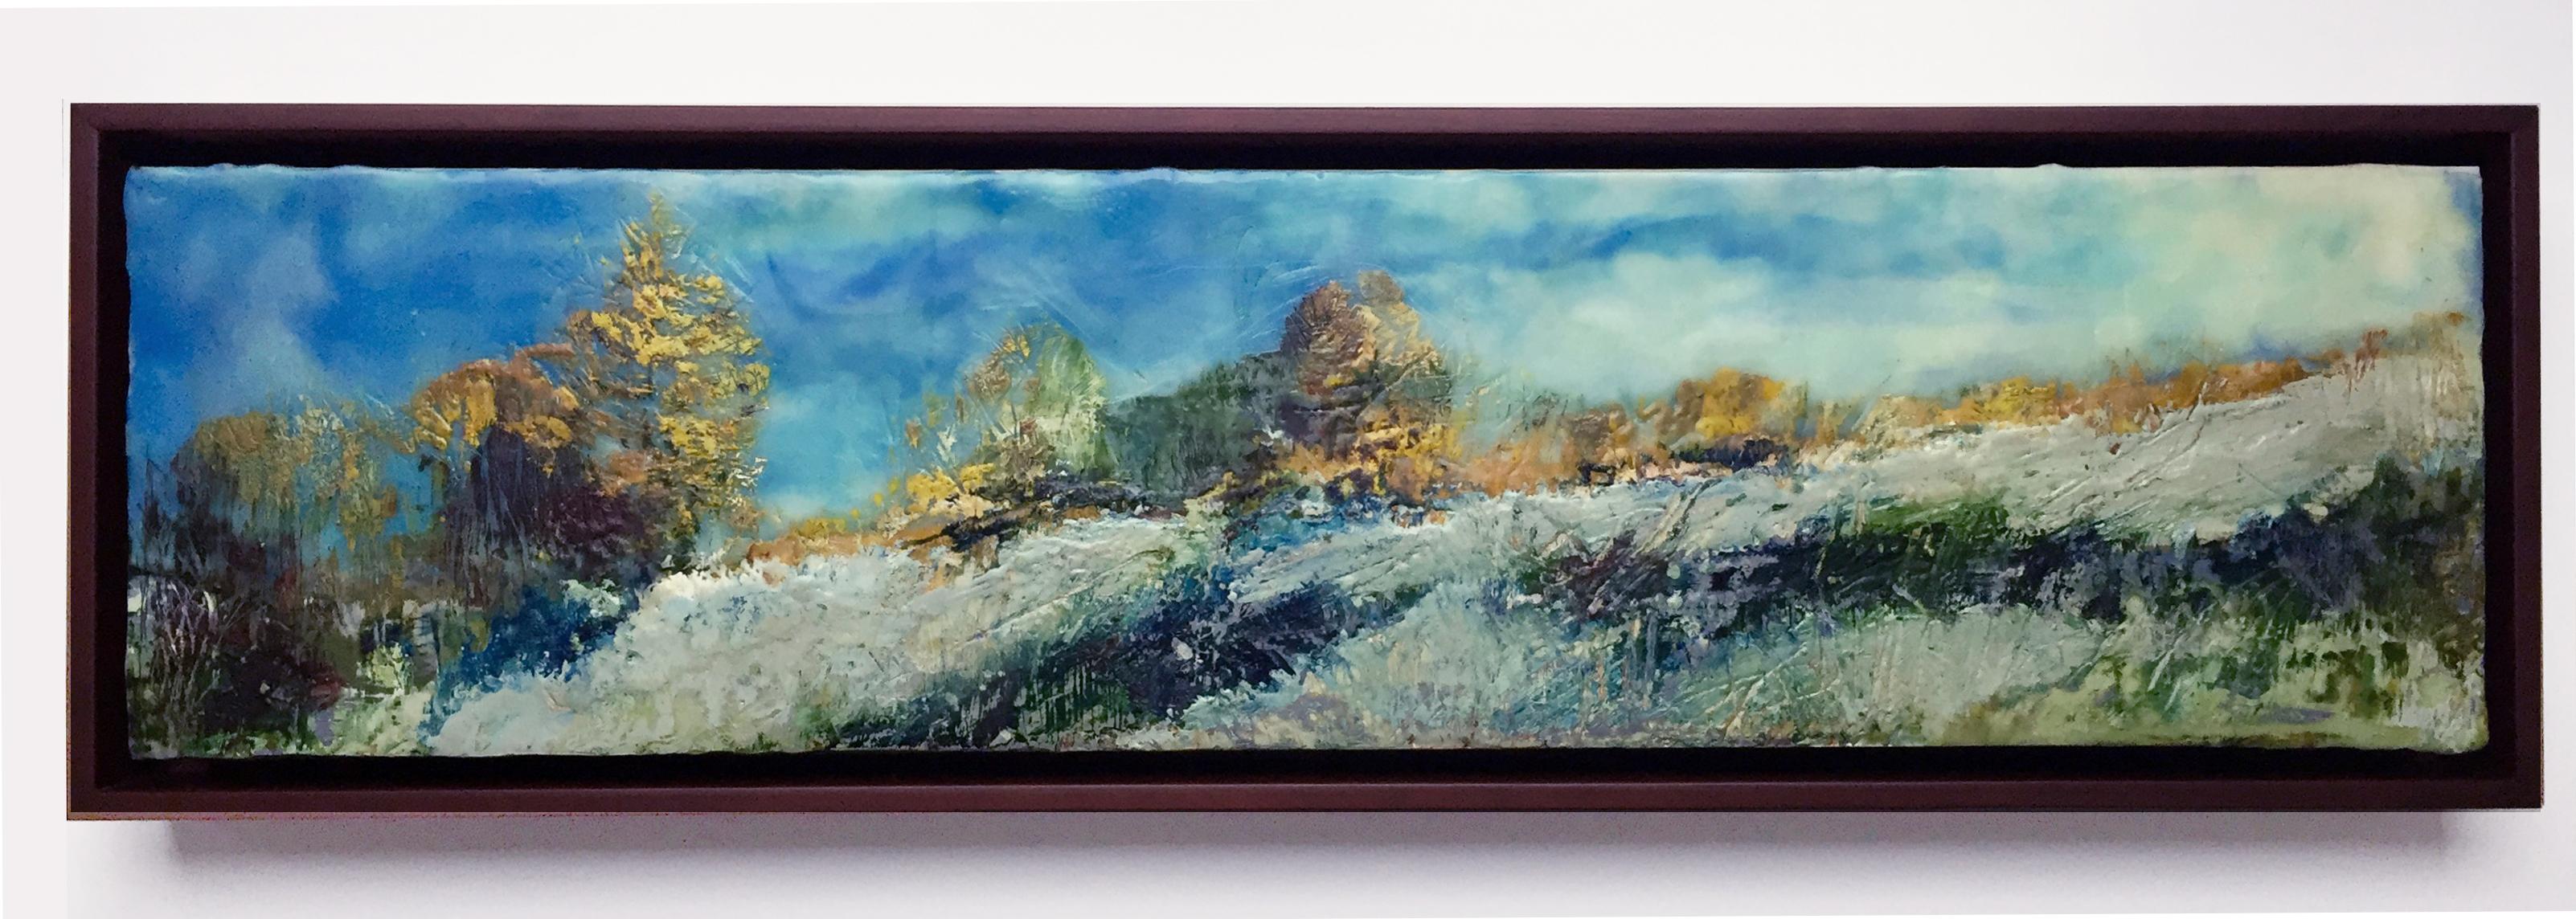 Regina Quinn  Landscape Painting - "Autumn Frost", oil painting, encaustic, landscape, clouds, sky, field, Vermont